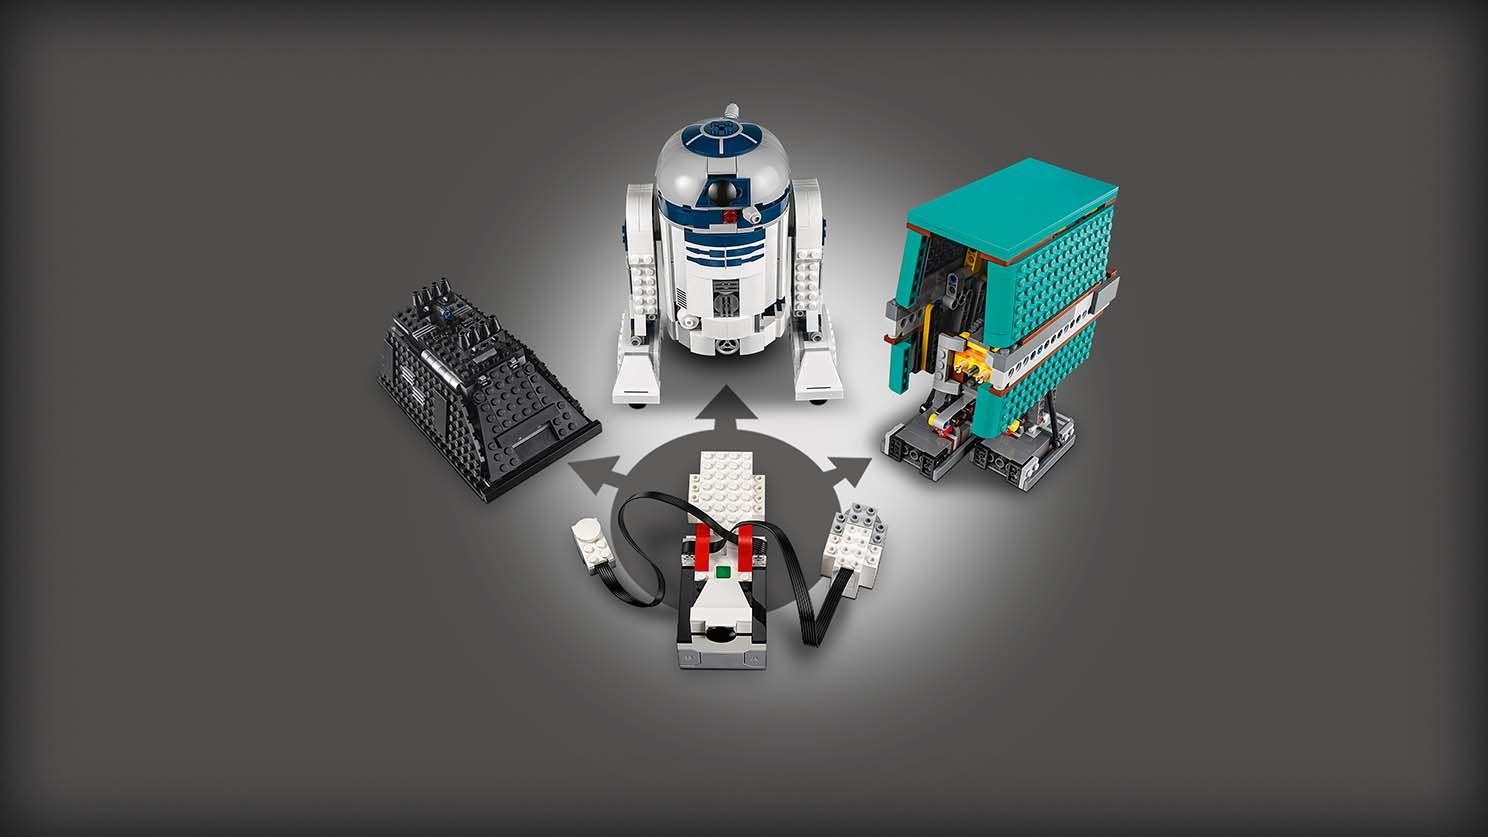 LEGO BOOST 75253 Star Wars™ BOOST Droide LEGO_75253_WEB_SEC03_1488.jpg